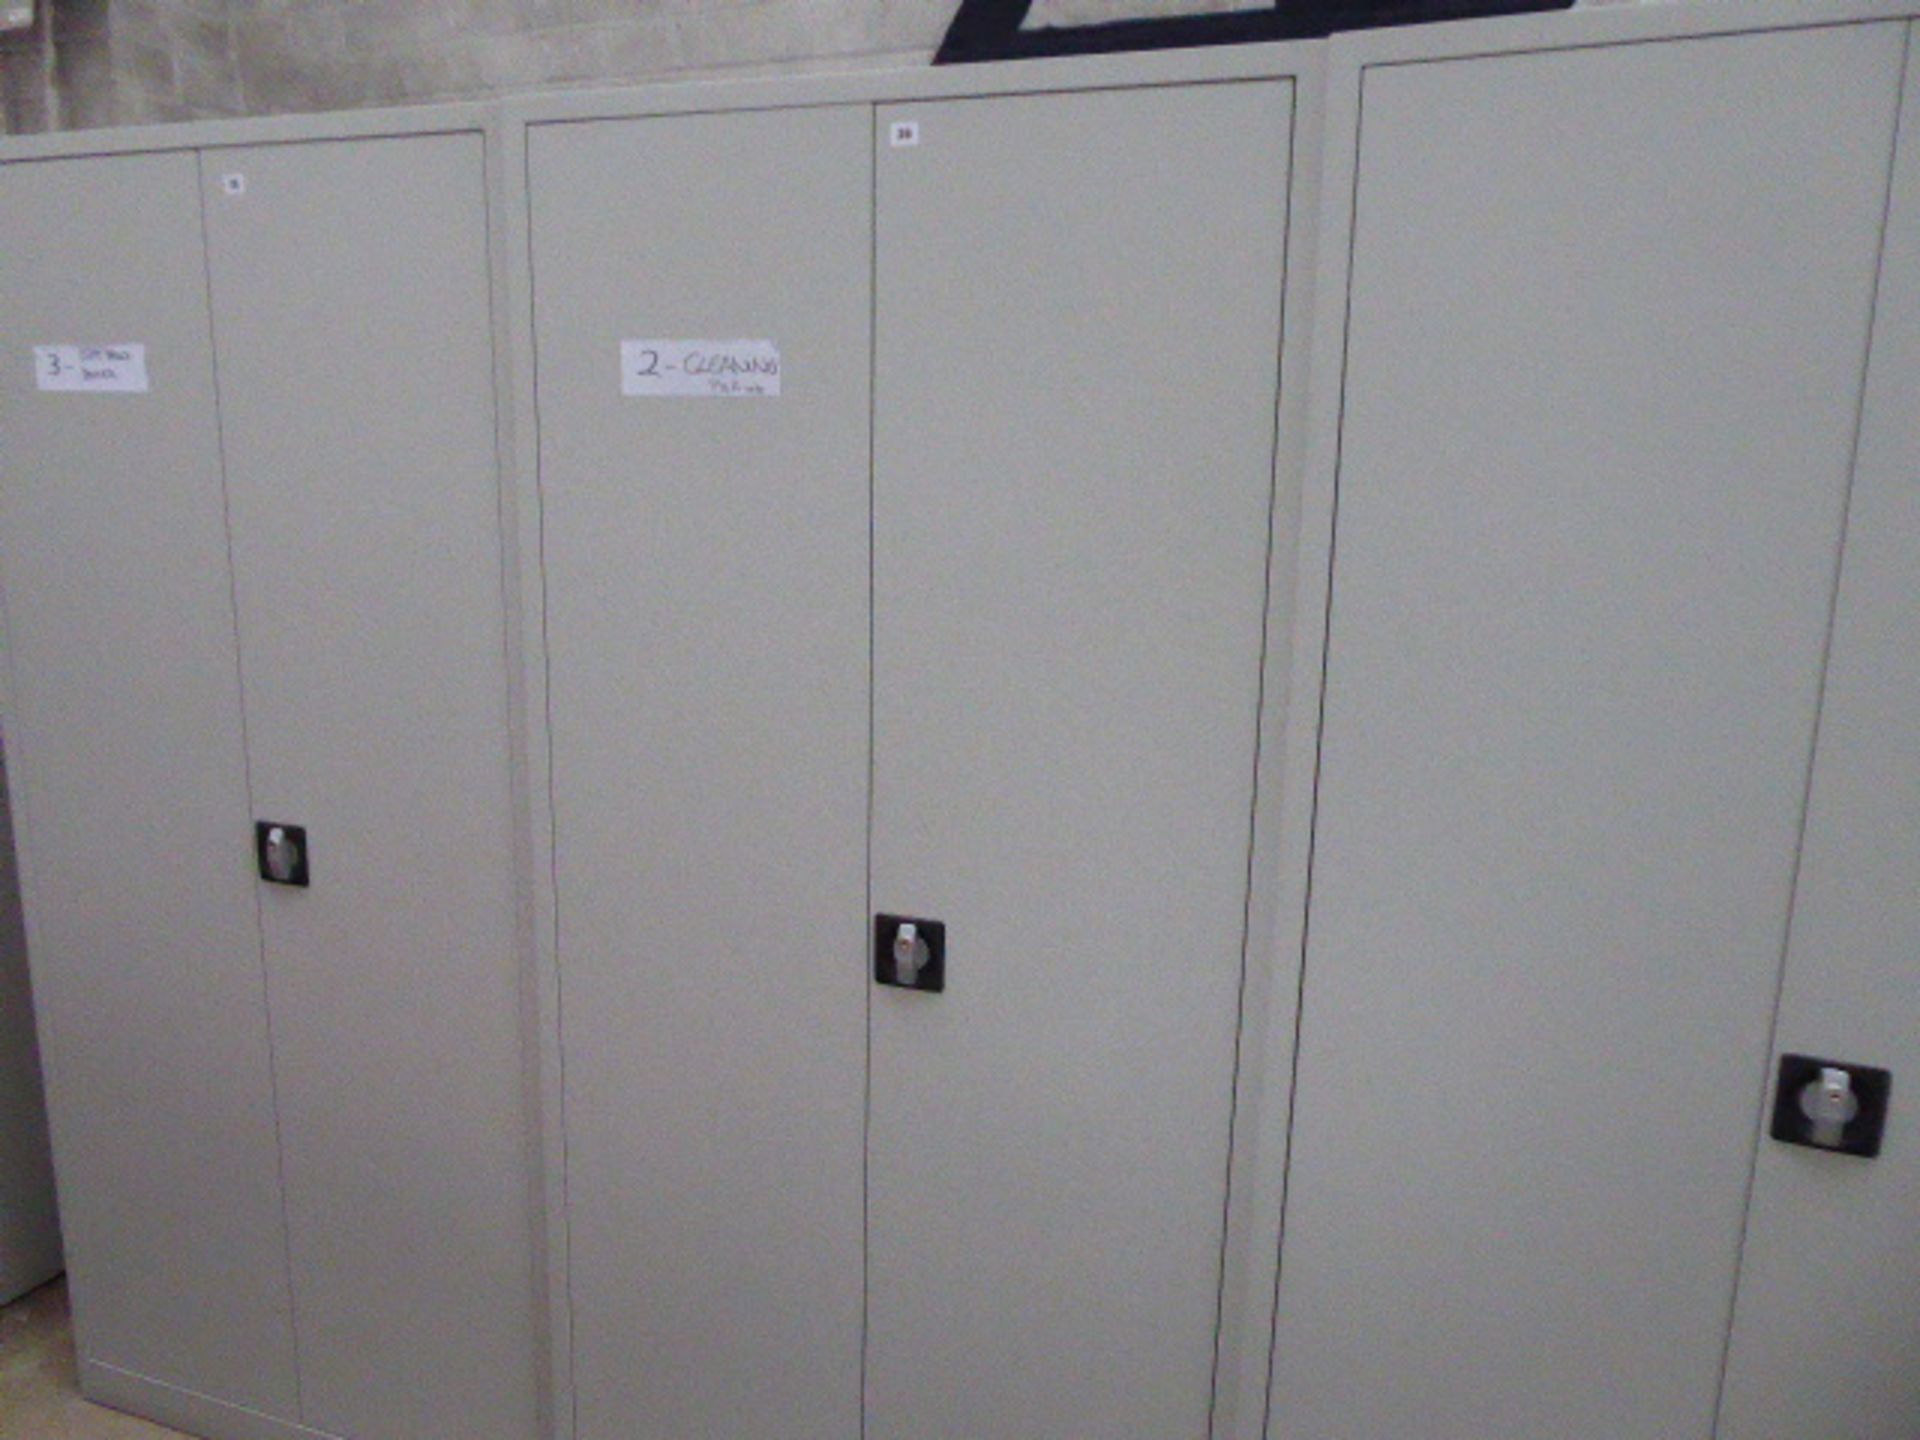 90cm grey metal 2-door stationery cabinet